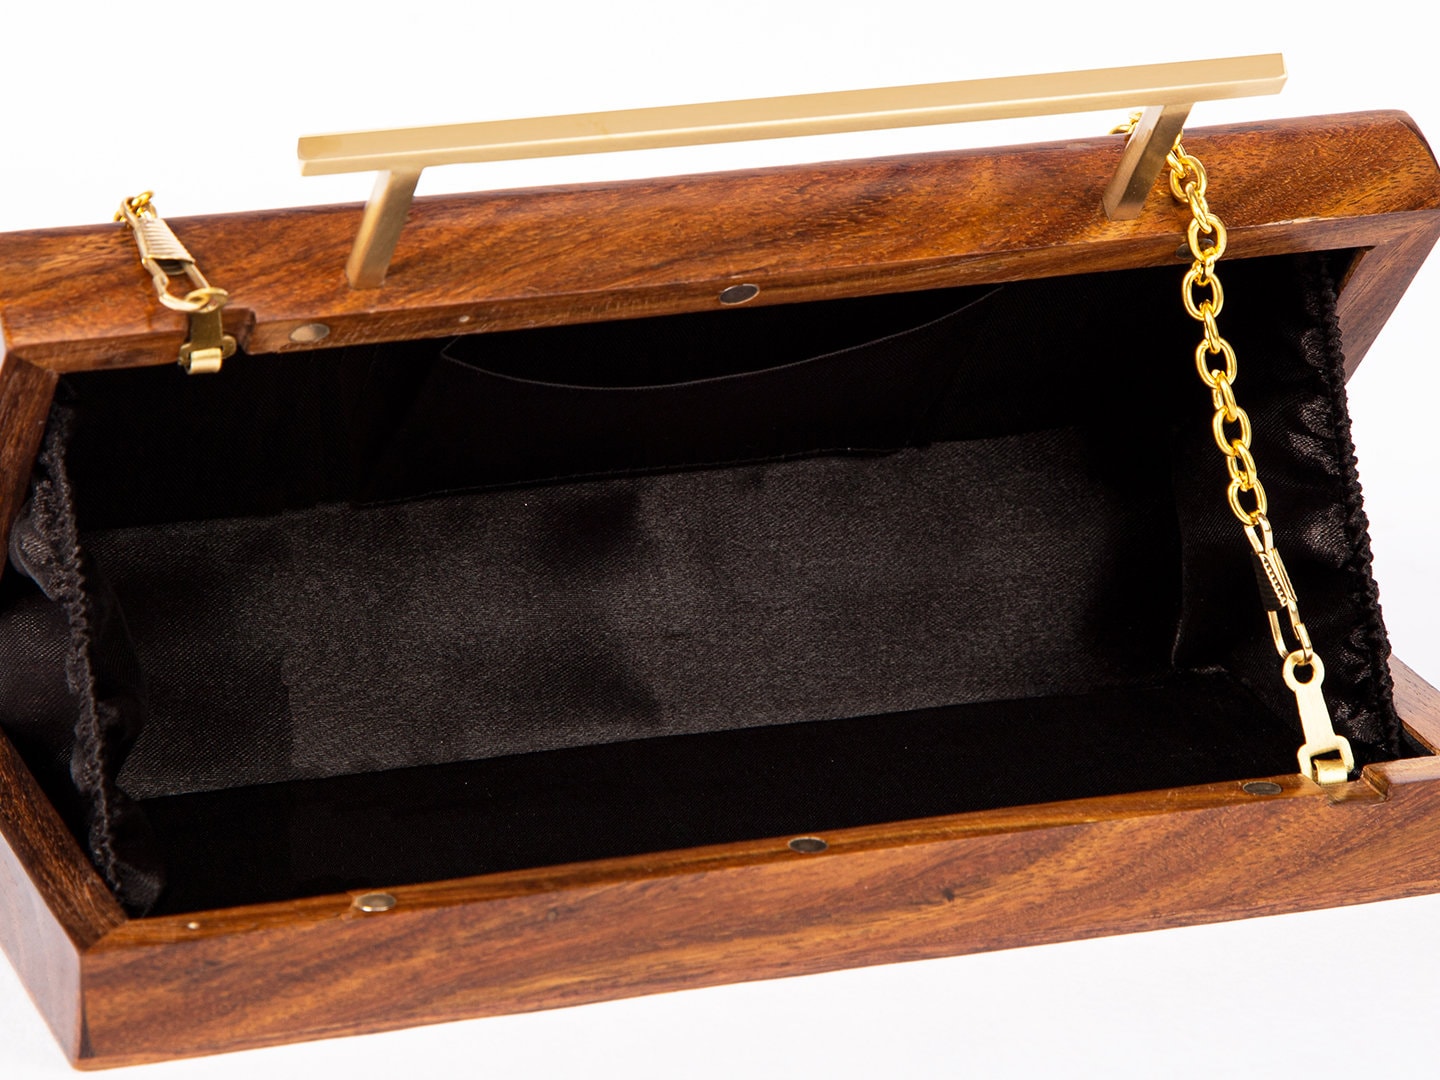 Rectangular Solid Brown Handcrafted Wooden Sling Bag - Elegant Natural Wood Clutch